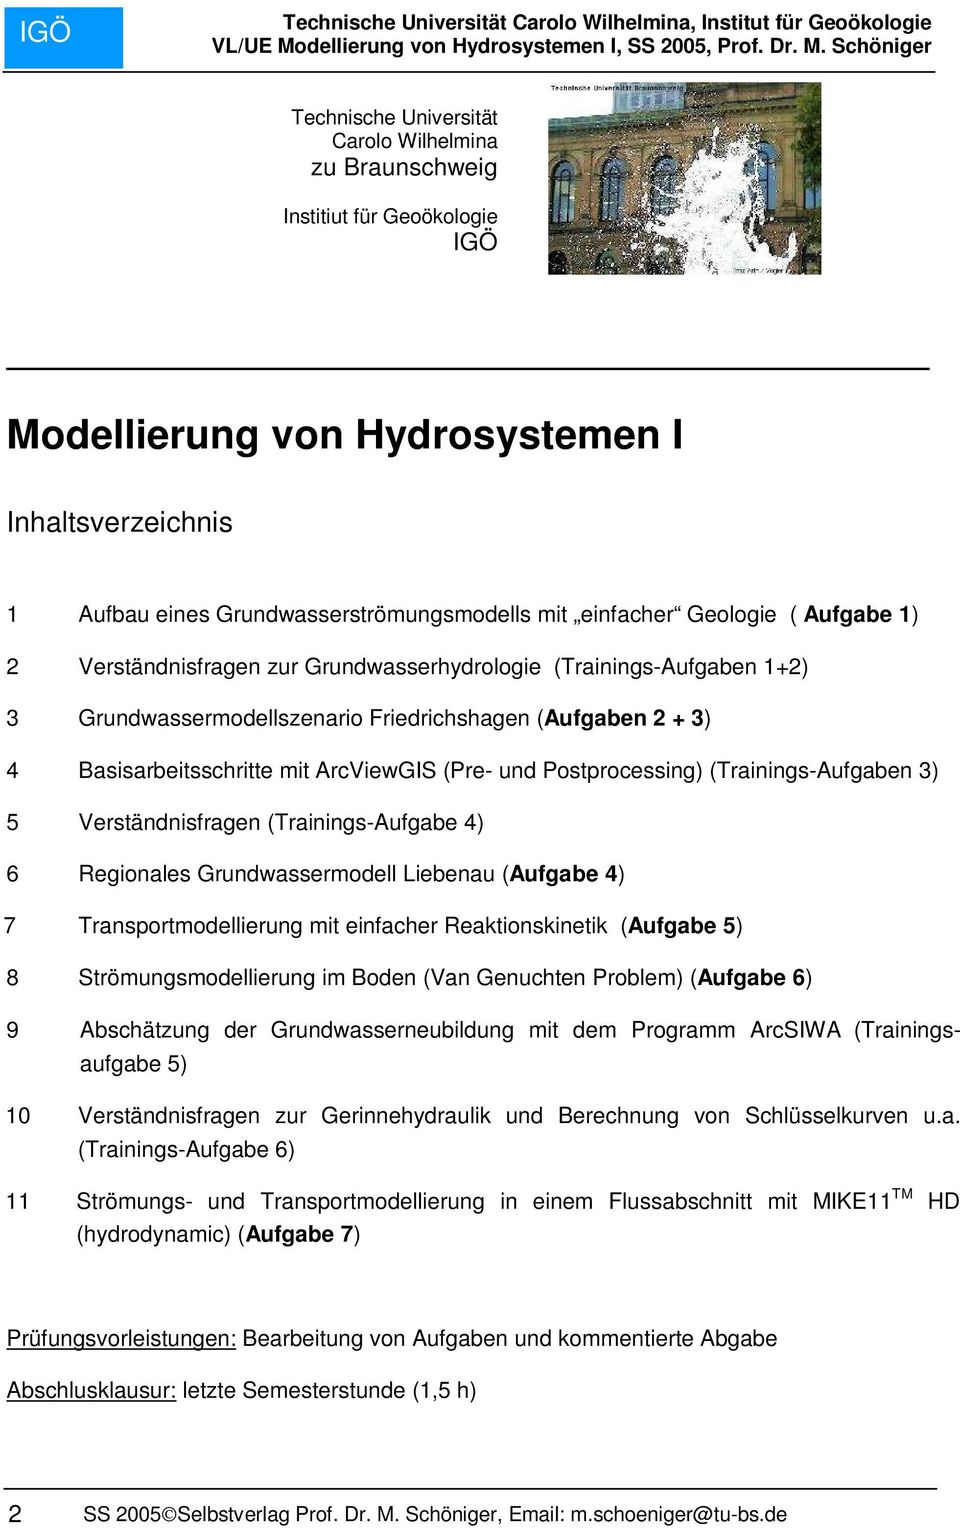 und Postprocessing) (Trainings-Aufgaben 3) 5 Verständnisfragen (Trainings-Aufgabe 4) 6 Regionales Grundwassermodell Liebenau (Aufgabe 4) 7 Transportmodellierung mit einfacher Reaktionskinetik